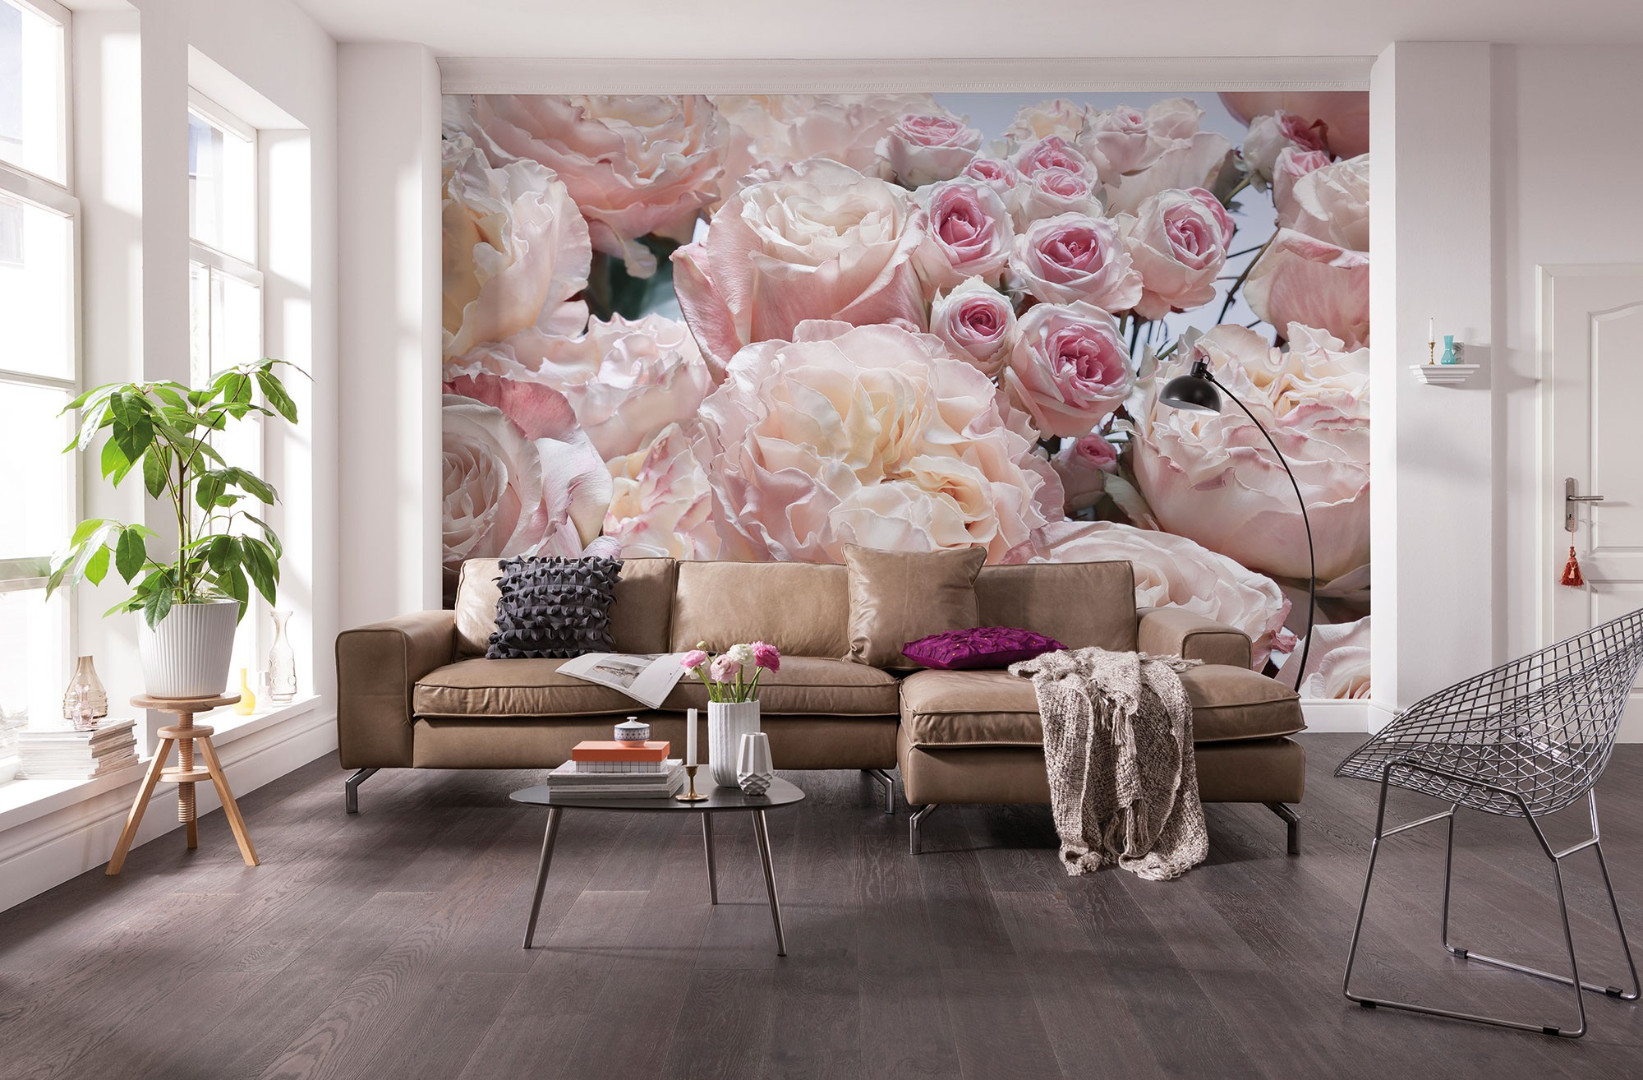 Фотообои с розами в интерьере +30 фото примеров декора стен